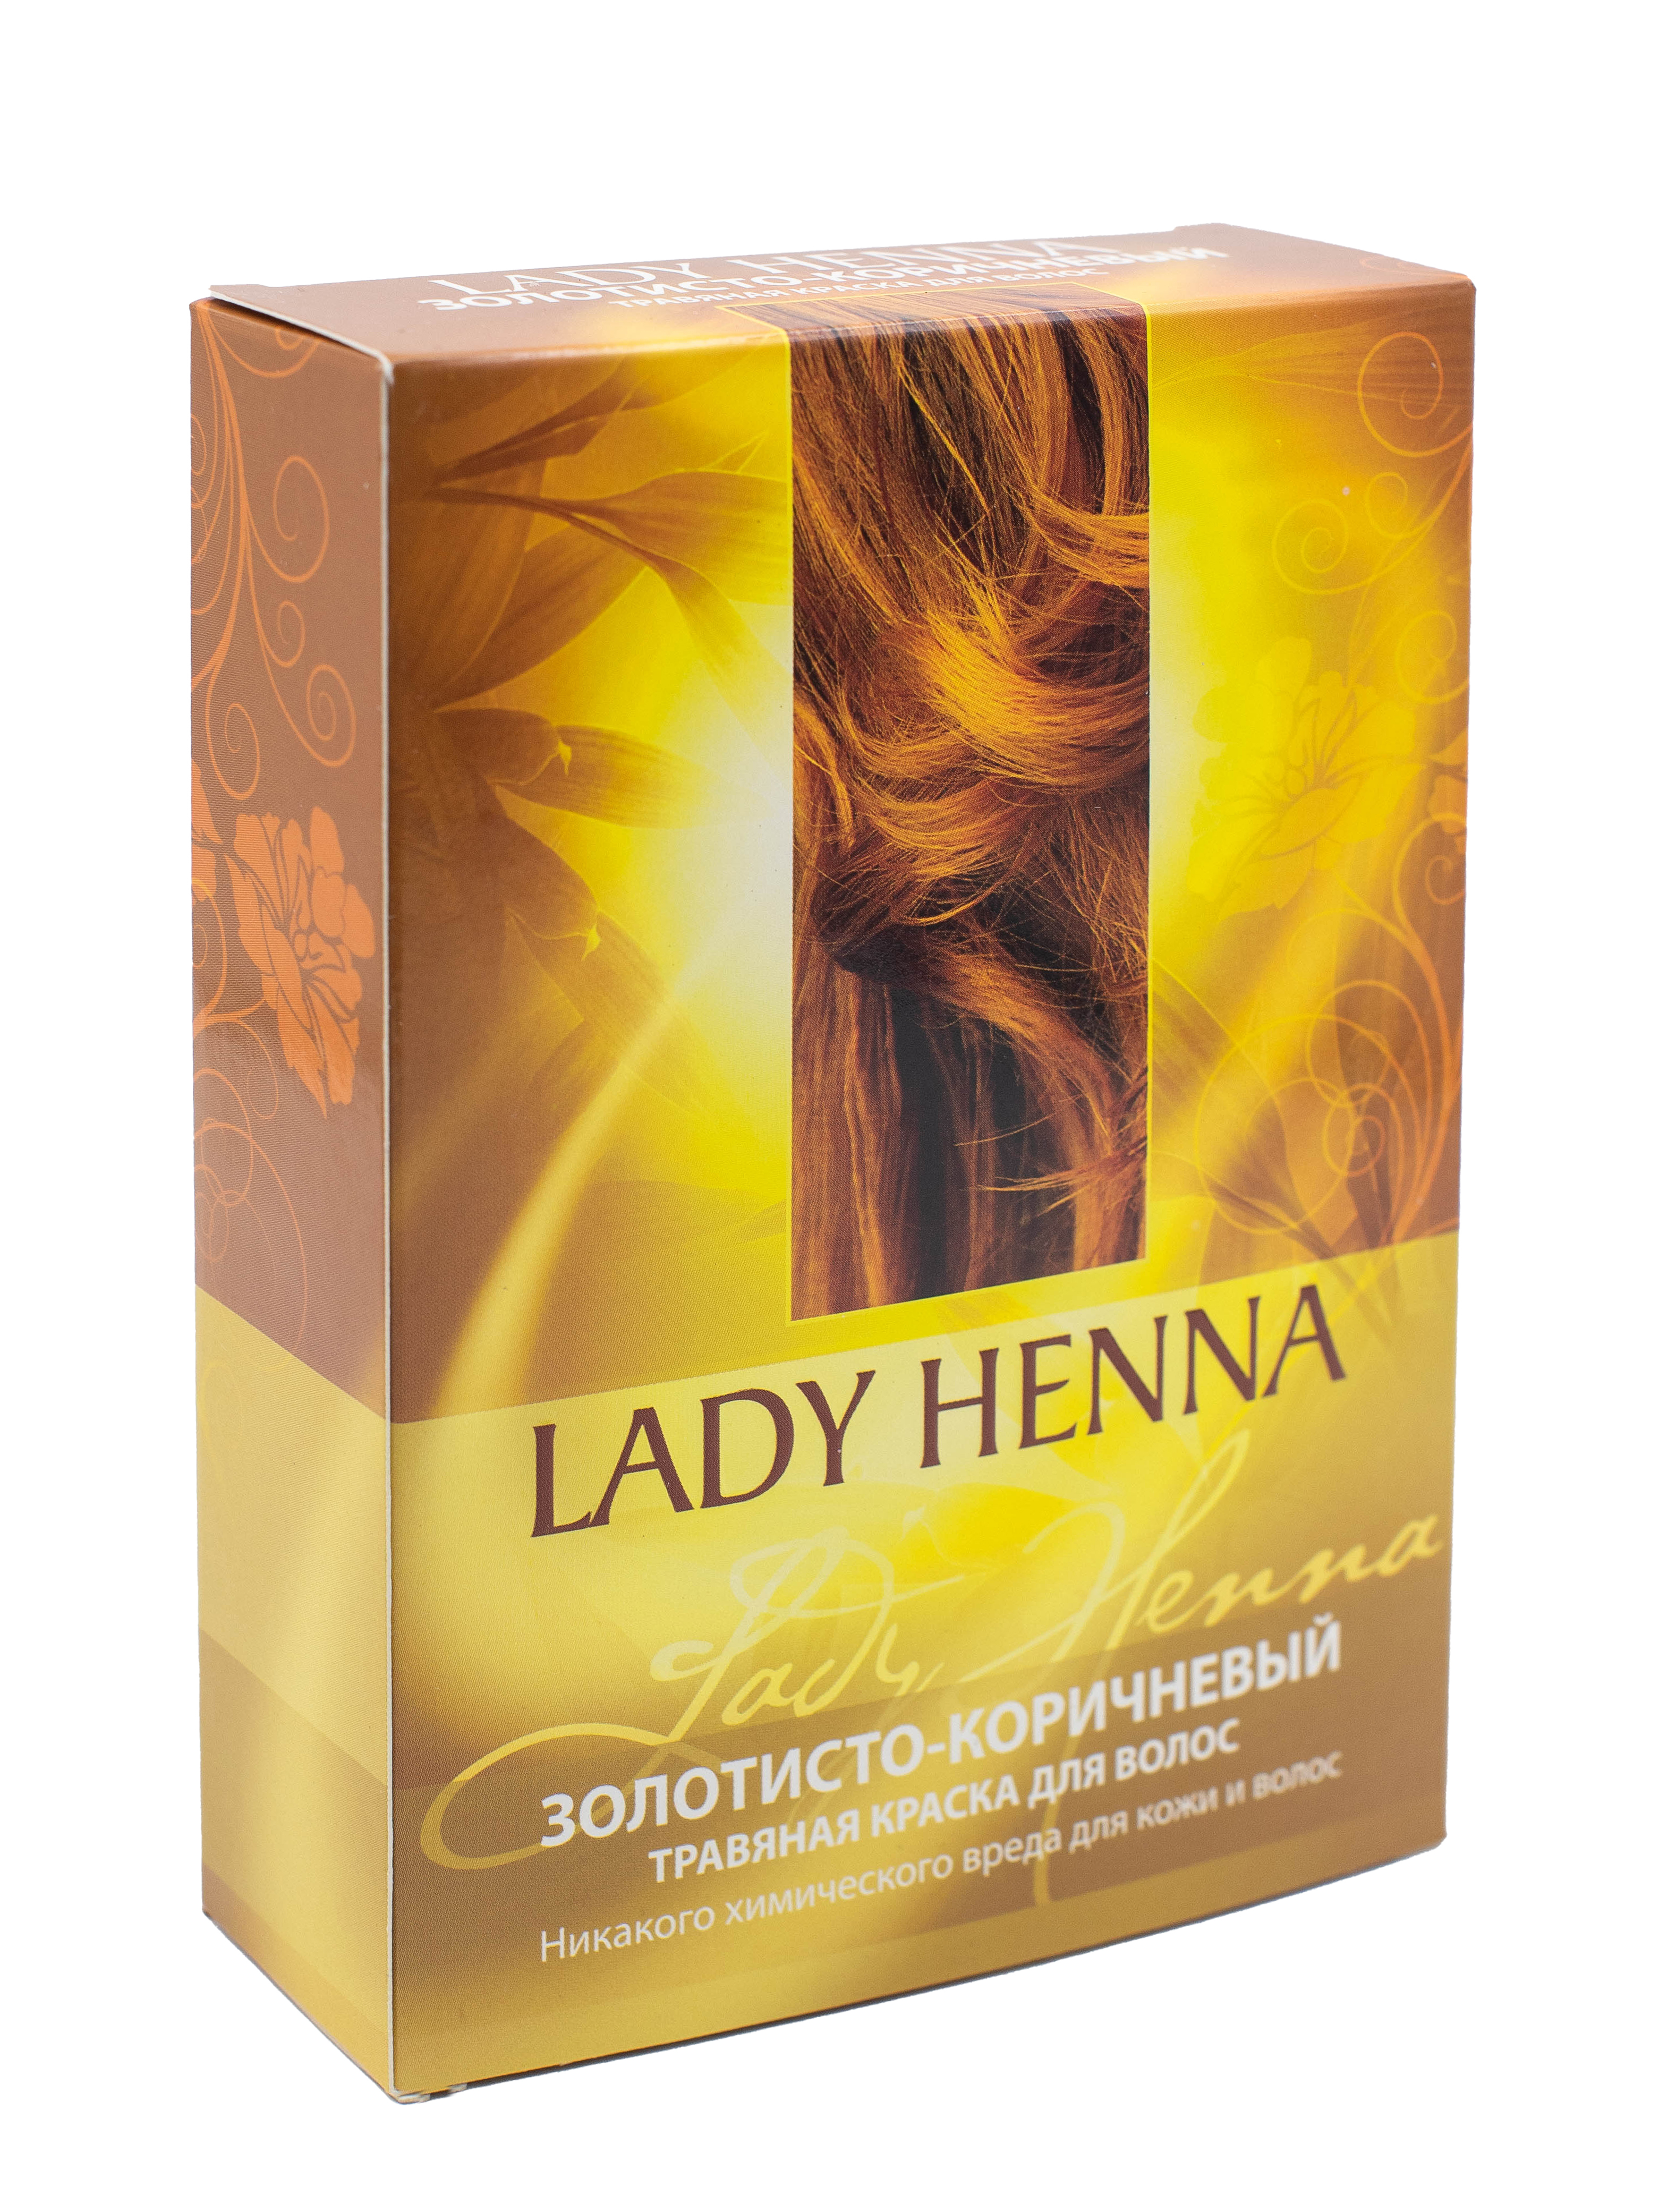 Травяные краски Lady Henna